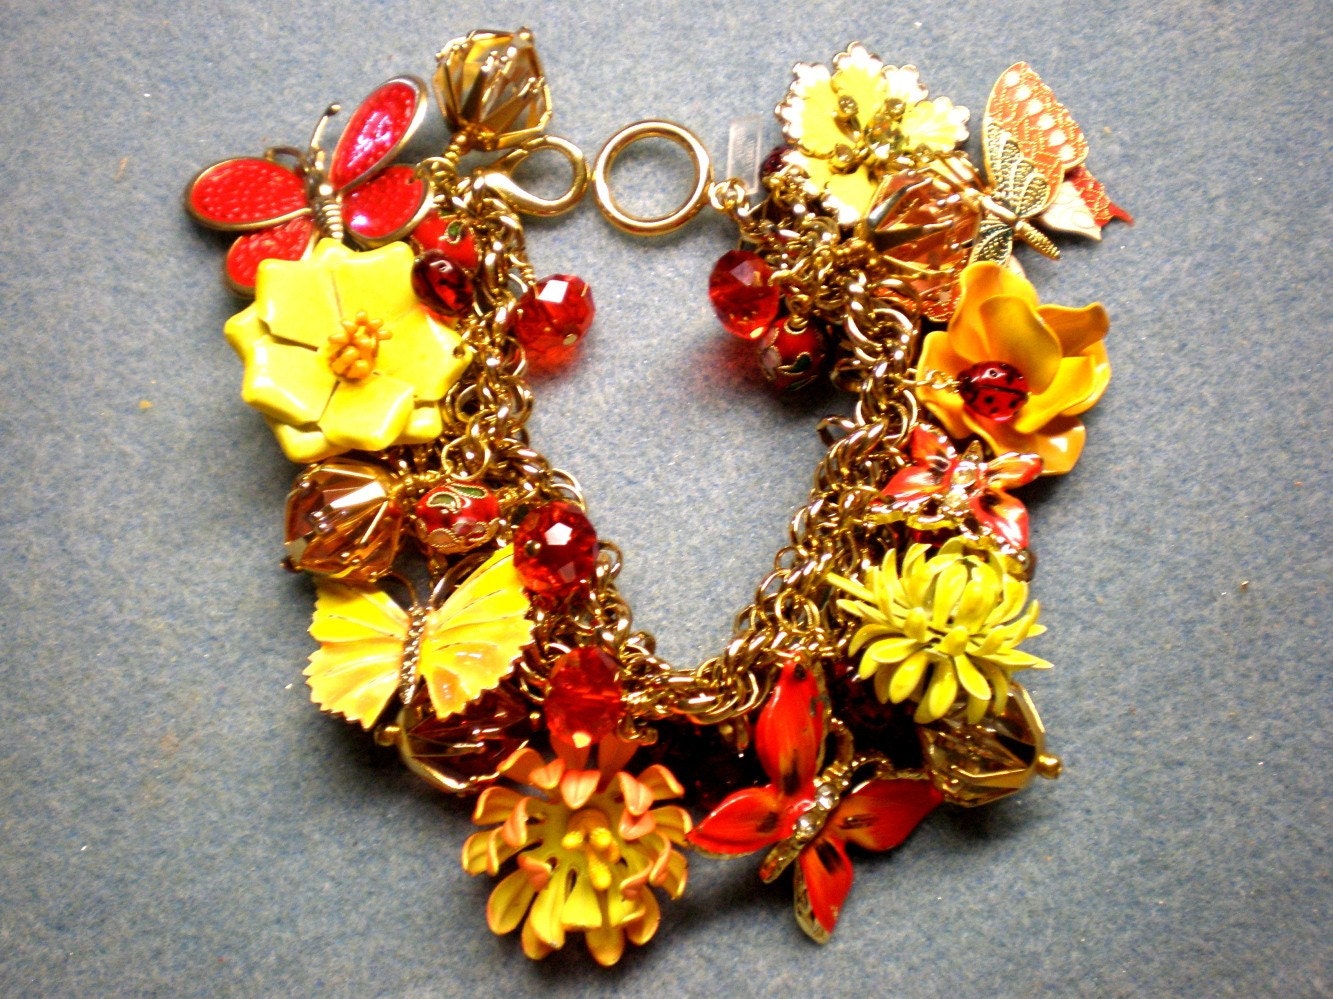 Repurposed Vintage Charm Bracelet / Flower / Butterfly - Butterfly Garden - fripperyfrosting